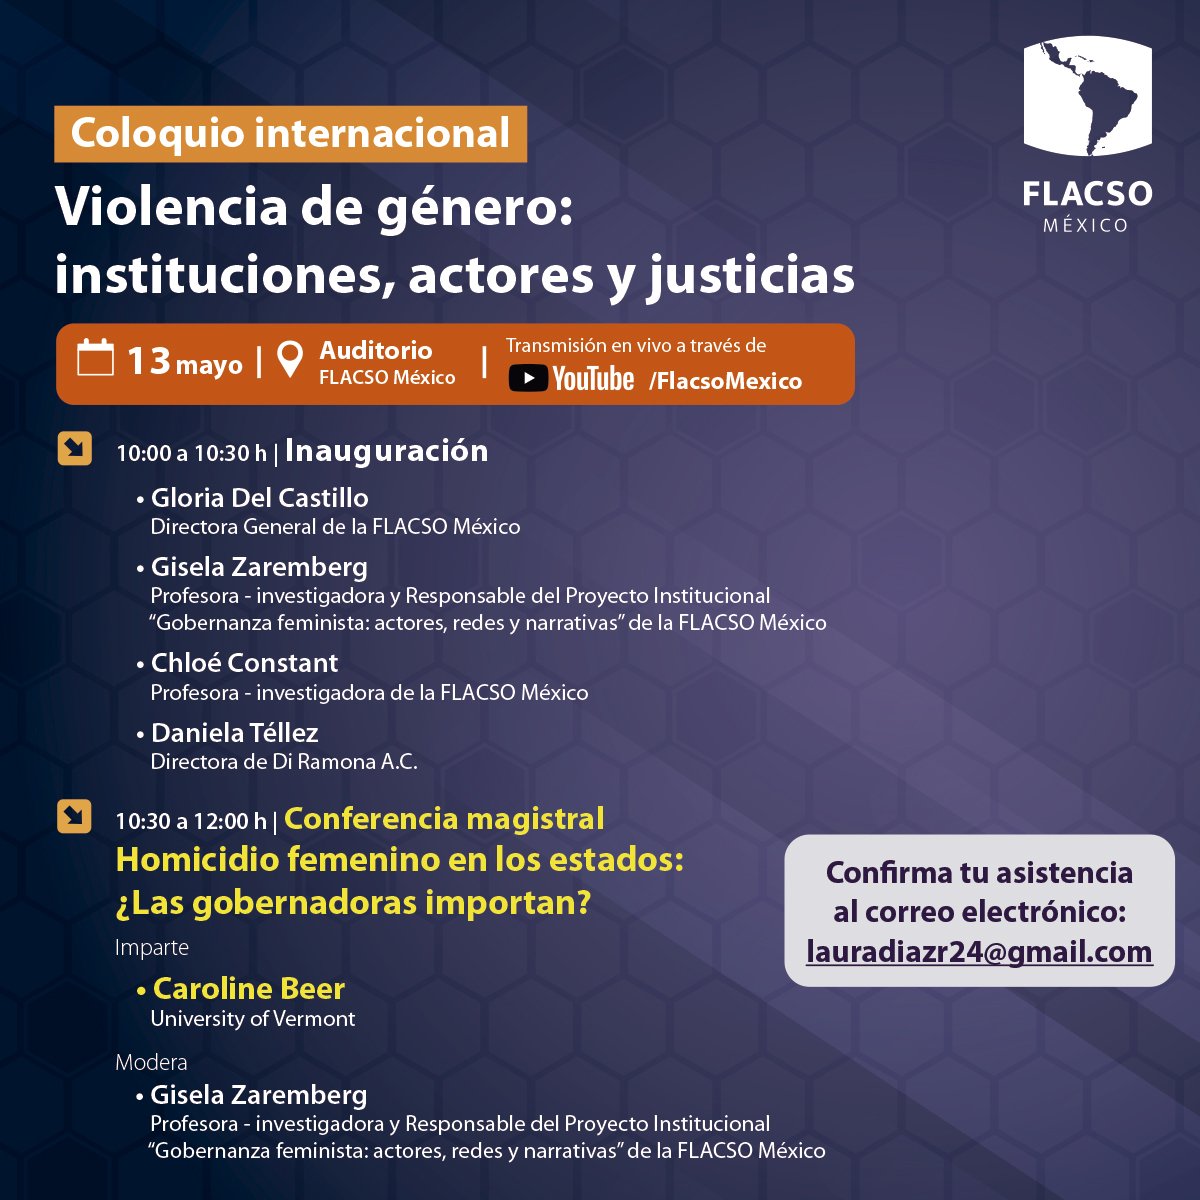 No te pierdas el #Coloquio internacional  #ViolenciaDeGénero : Instituciones, actores y justicias

🗓️13 mayo 🕙 10:00 h (CDMX)
📍FLACSO México

Confirma tu asistencia👇
📨lauradiazr24@gmail.com

Sigue la transmisión en vivo 
📹 bit.ly/YTFLACSO